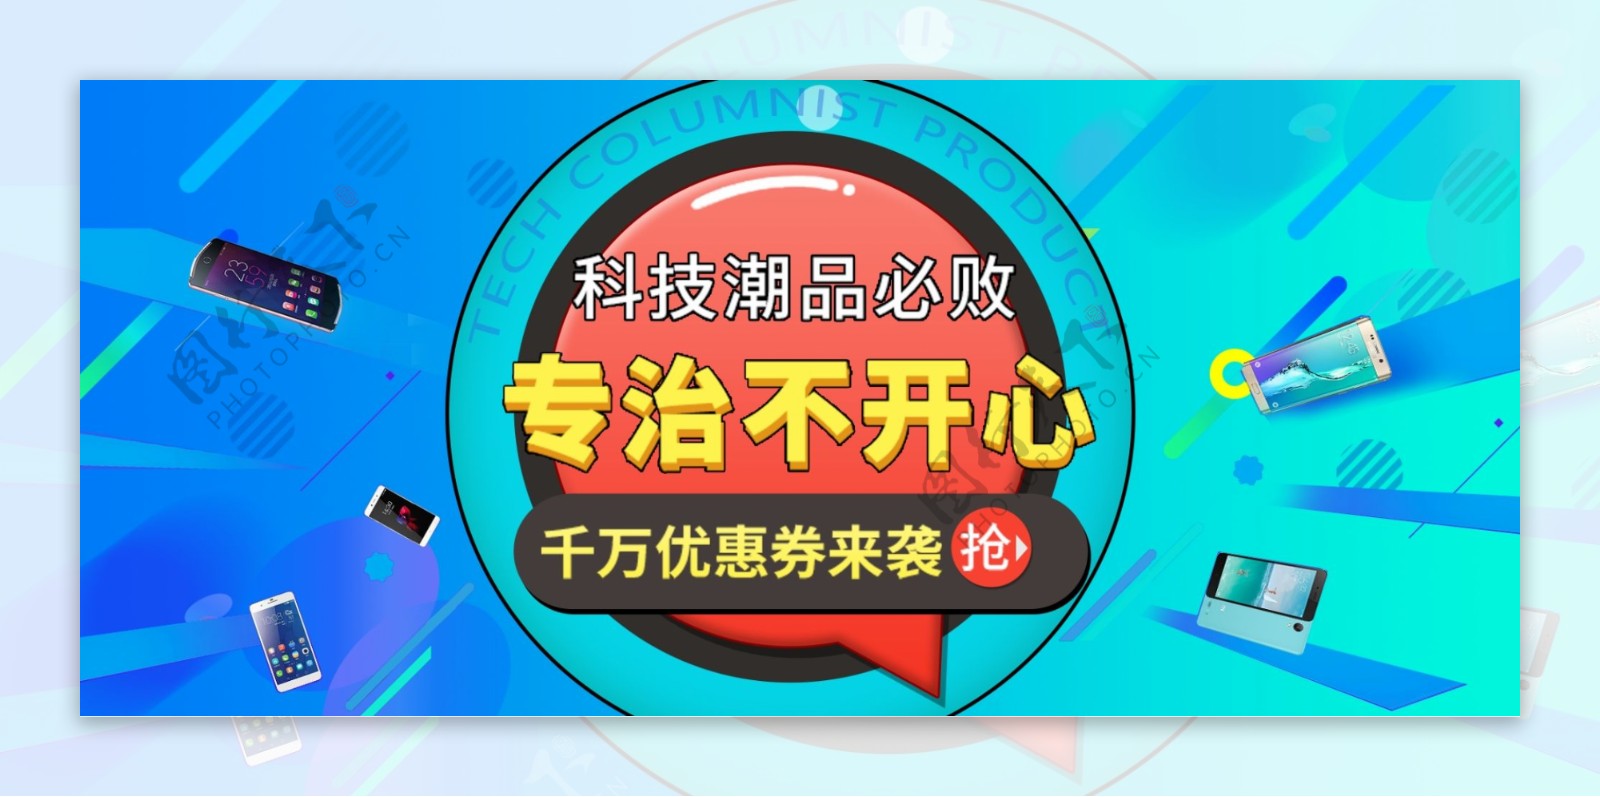 淘宝京东数码电器科技电商banner